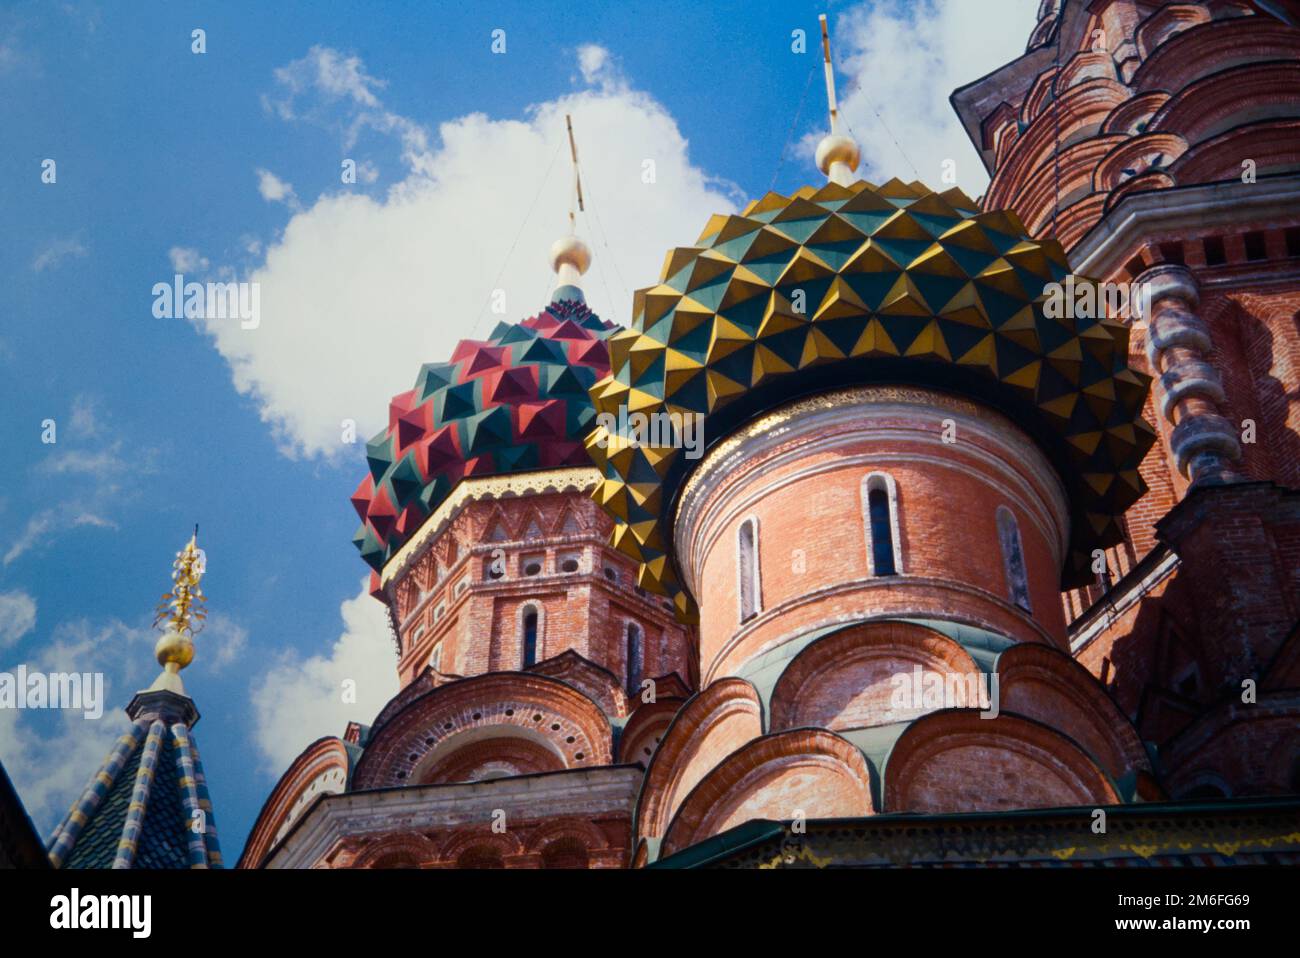 Historischer Blick auf das Archiv mit Blick auf die farbigen Zwiebelkuppeln der Basilius-Kathedrale oder die Wassilienkathedrale, die Gesegnete oder Dreifaltigkeitskathedrale auf dem Roten Platz Moskau 1990 Stockfoto